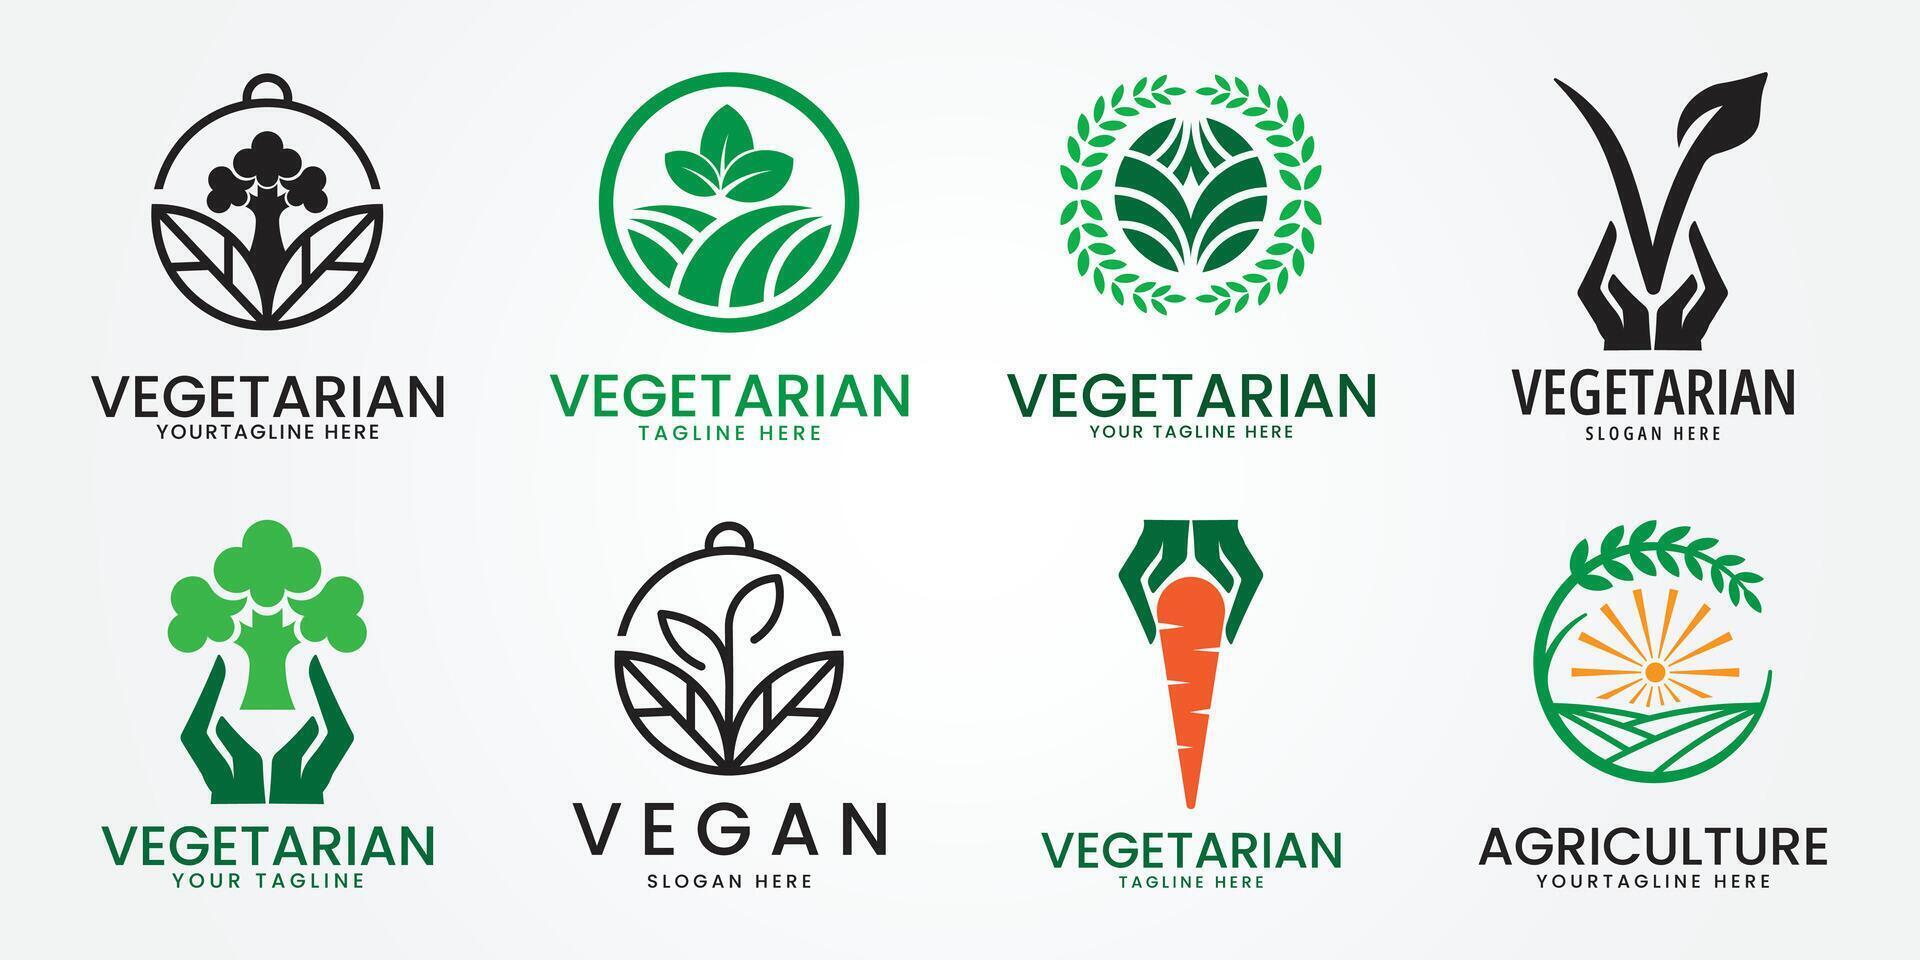 vegan logo icon Leaf symbol plant based diet product label illustration. vector